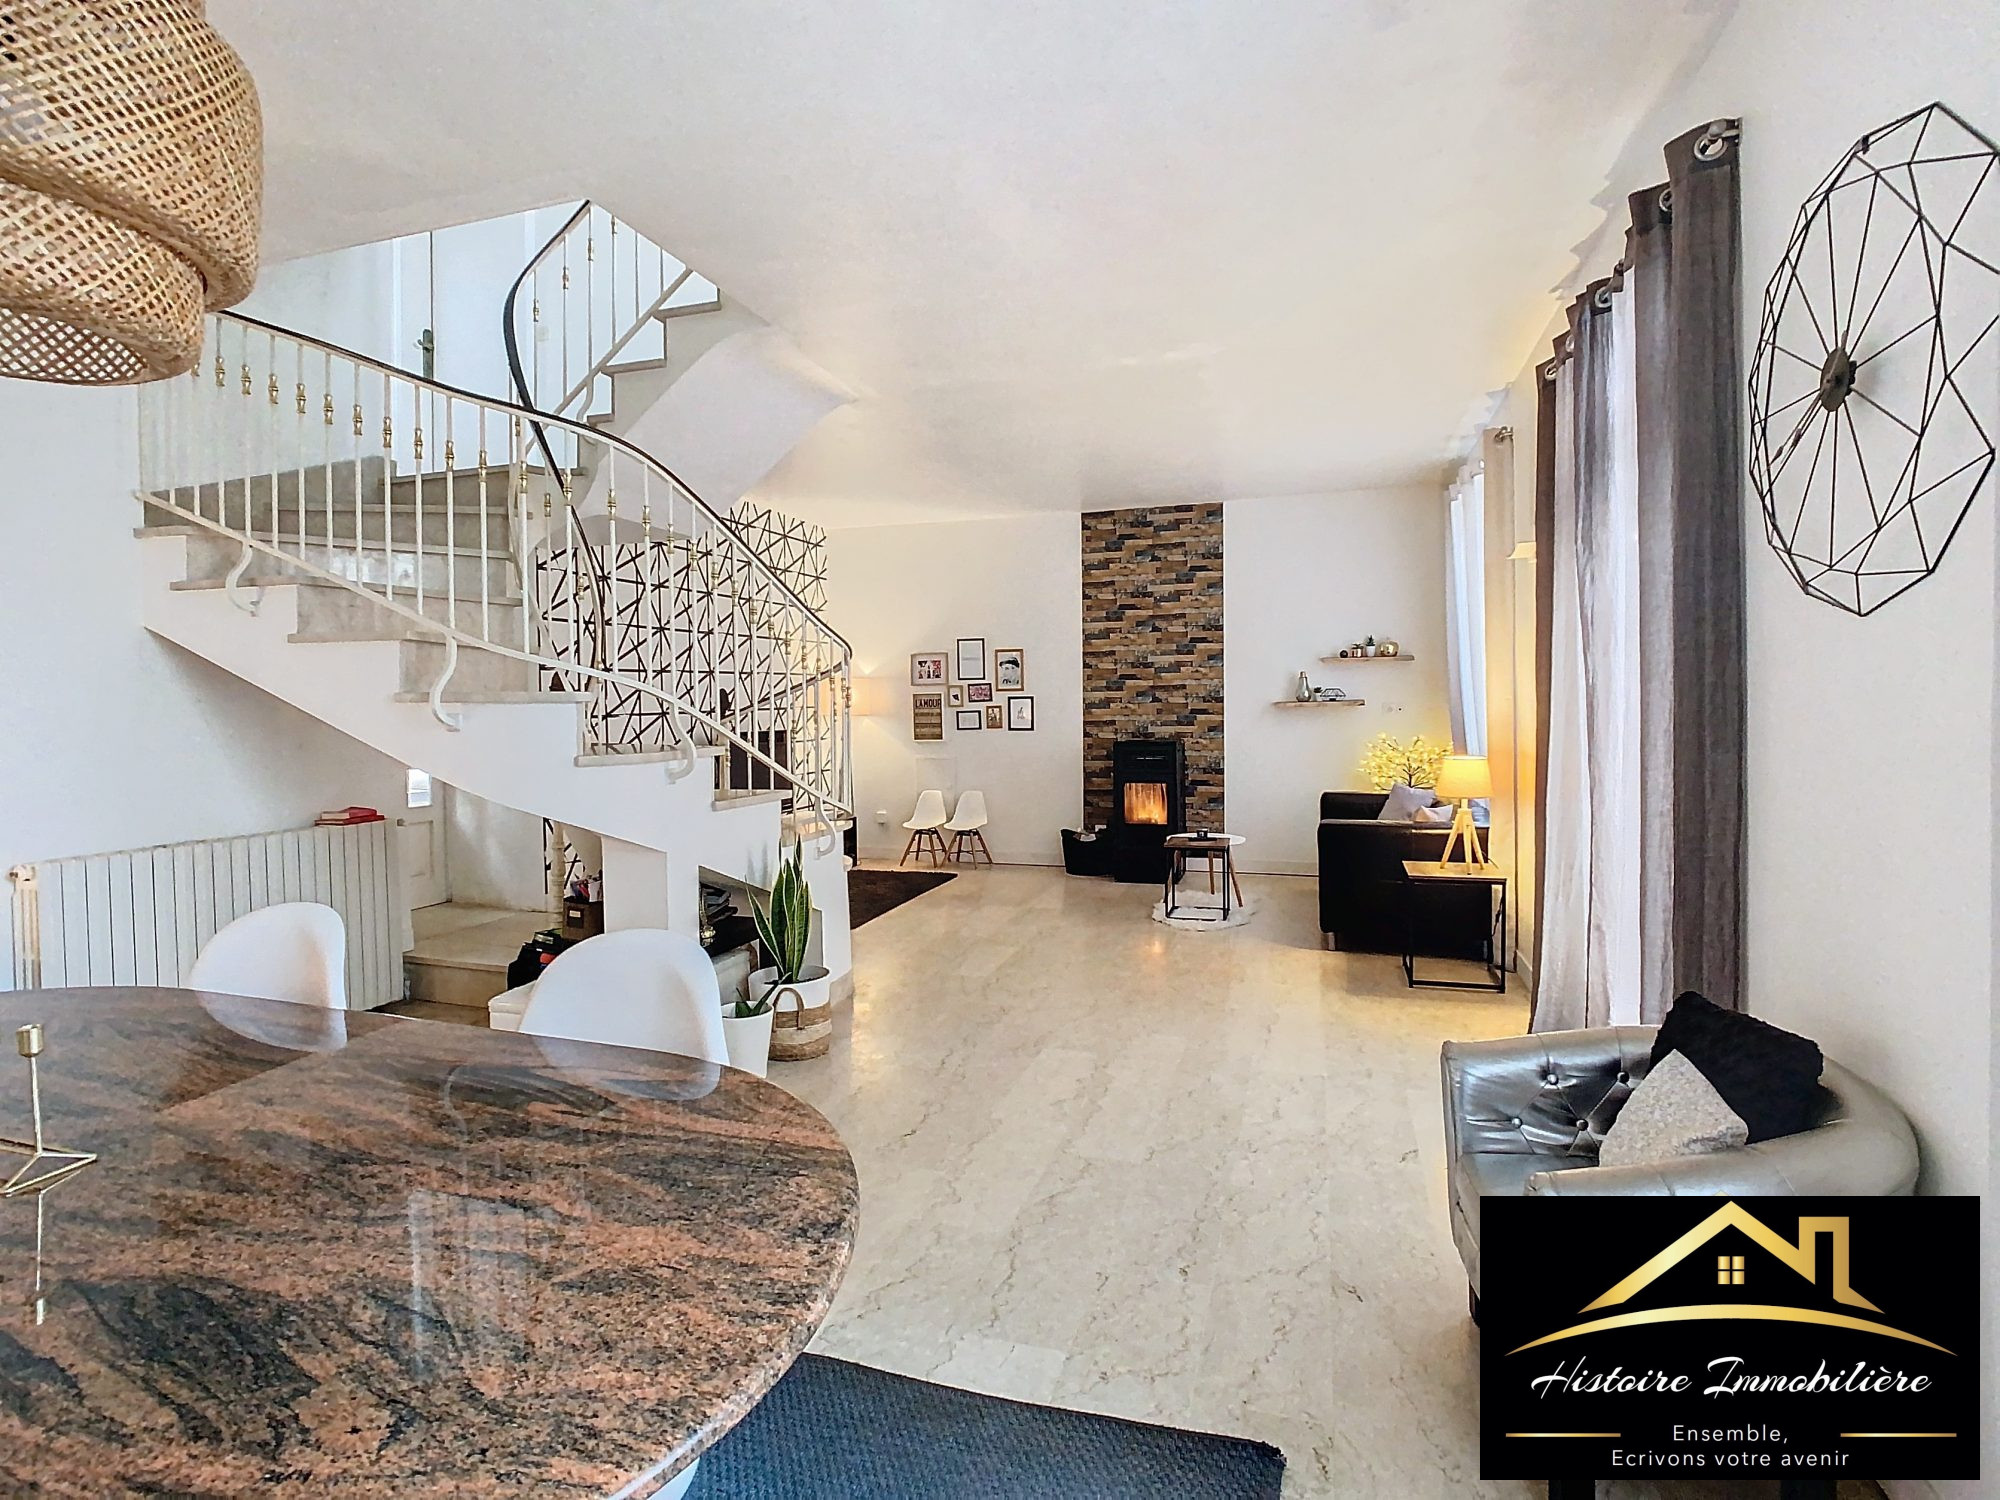 Vente Maison 130m² 6 Pièces à Landerneau (29800) - Histoire Immobiliere